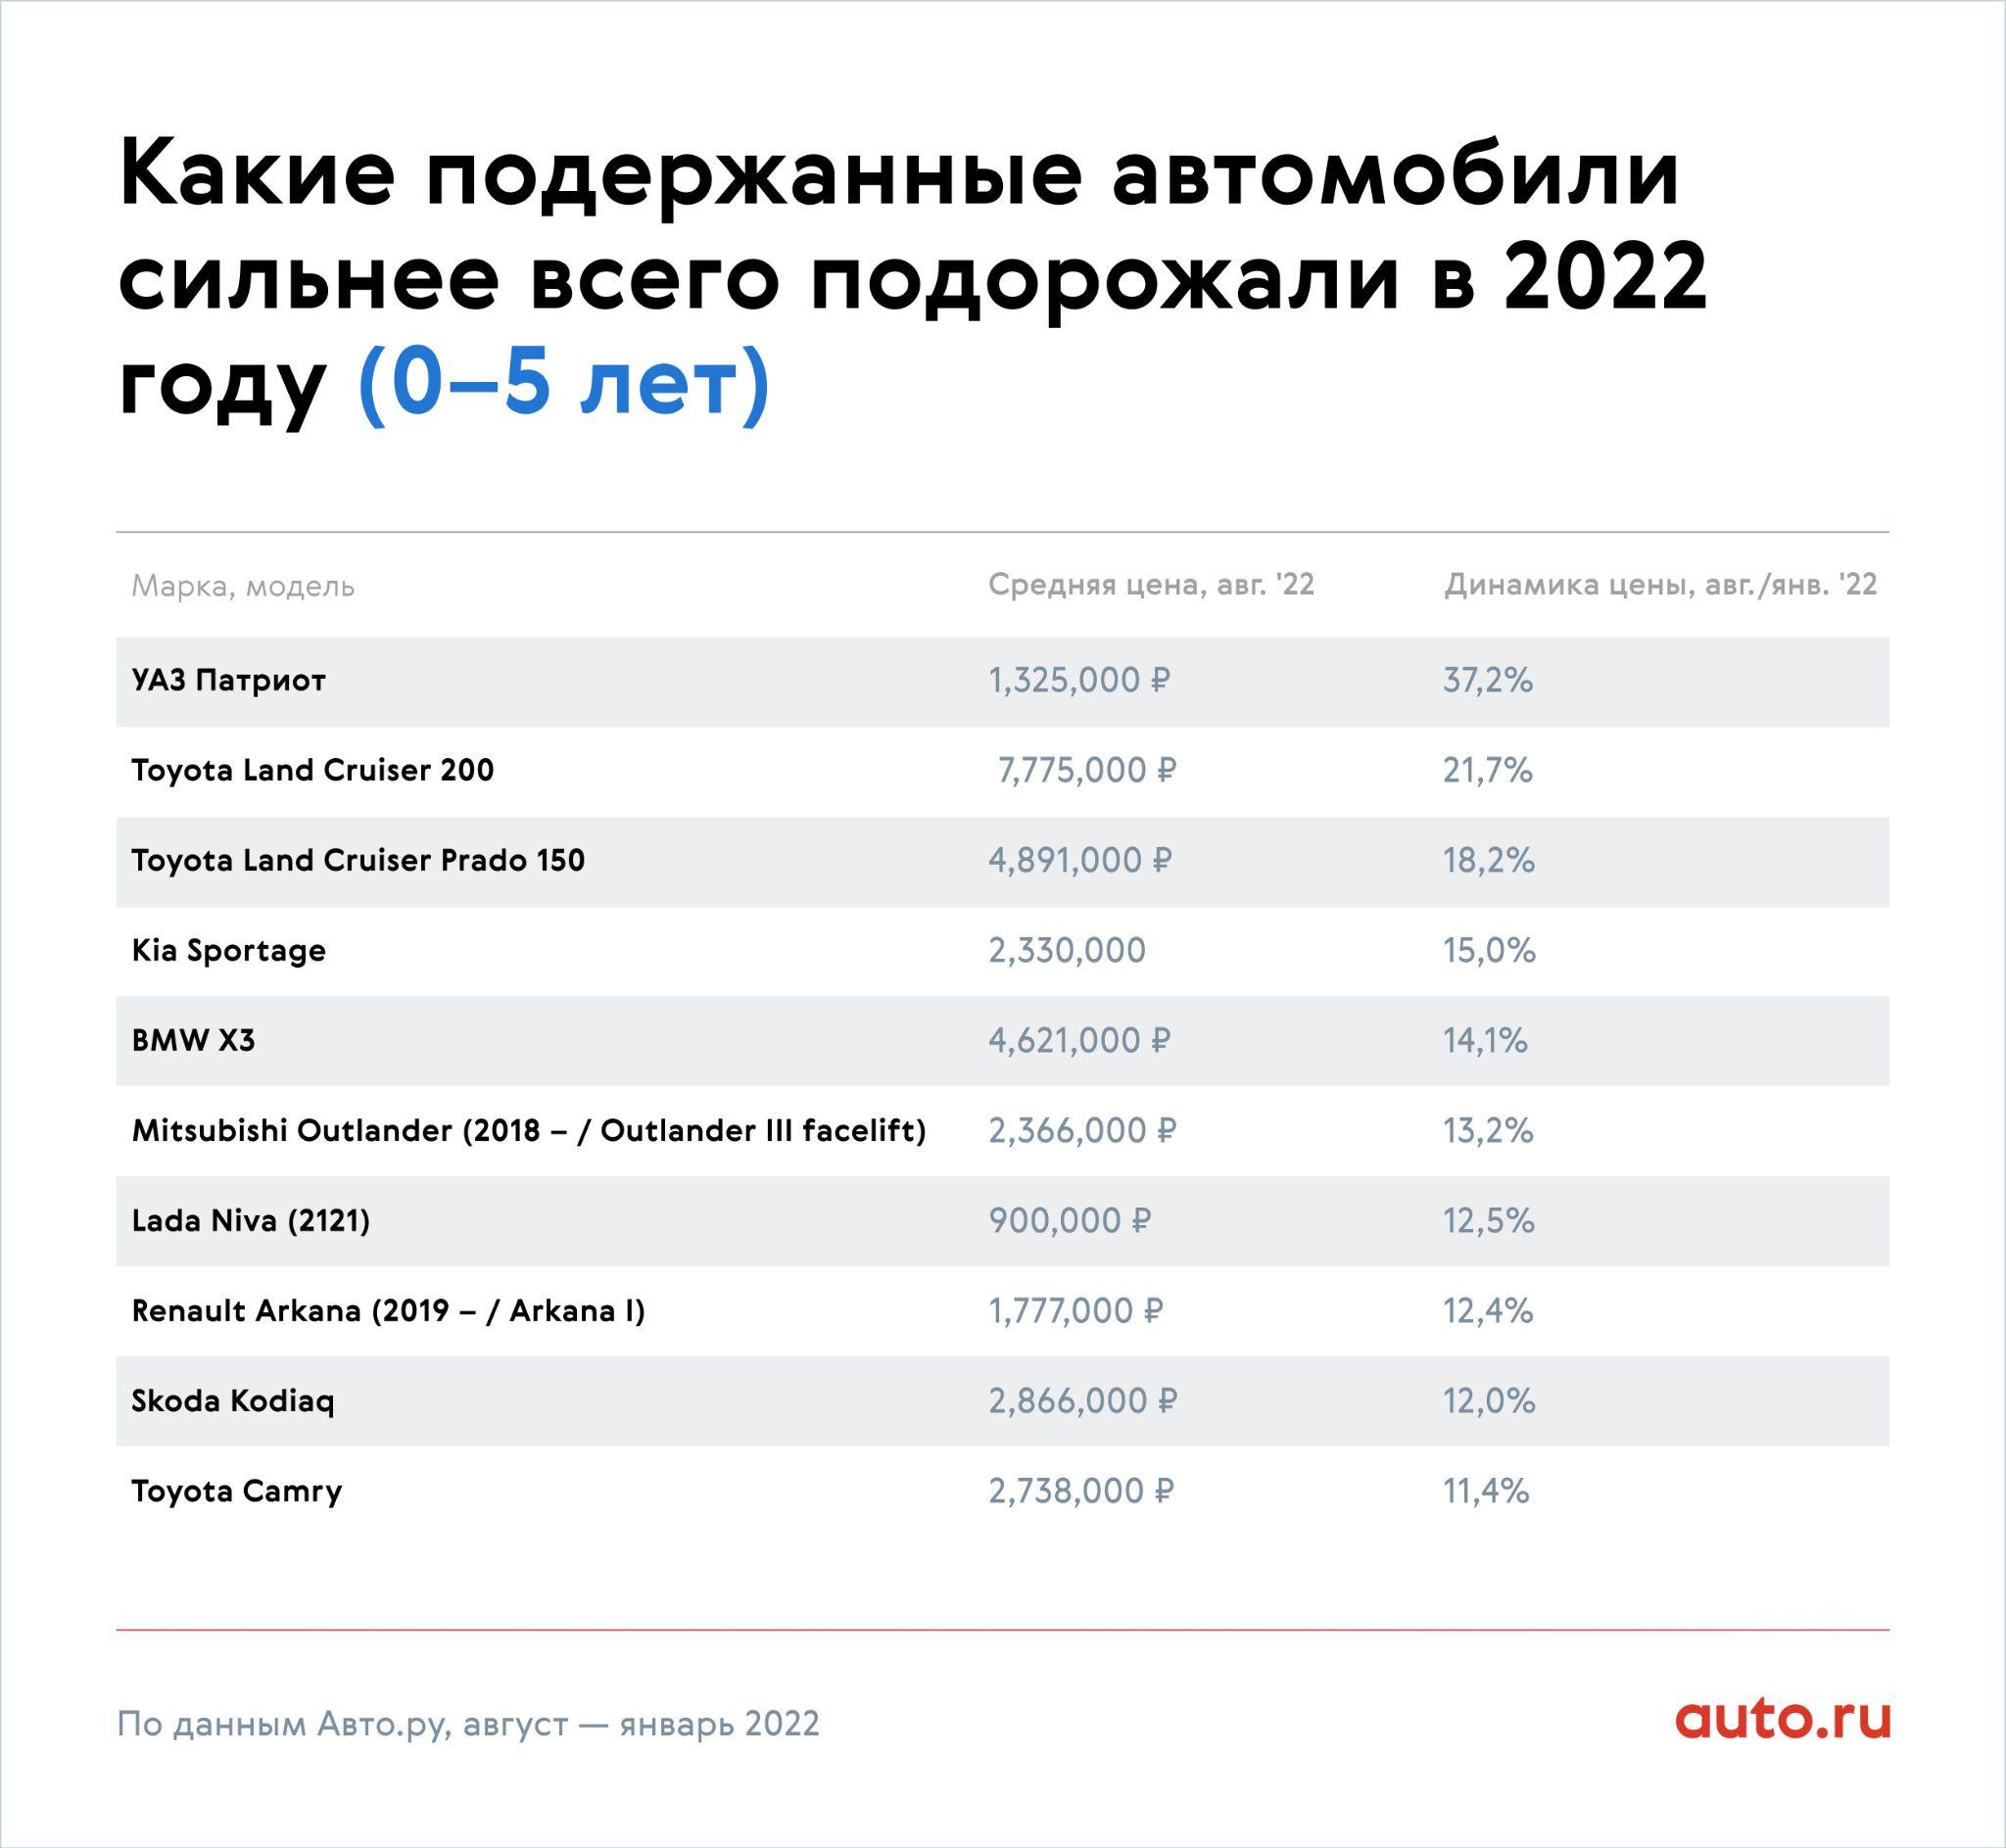 С 1 апреля вырастут цены на авто. Подорожание машин в 2022 году. Авторынок России 2022. Средняя стоимость автомобиля в России в 2022 году. Рост стоимости автомобилей в 2022 году таблица.